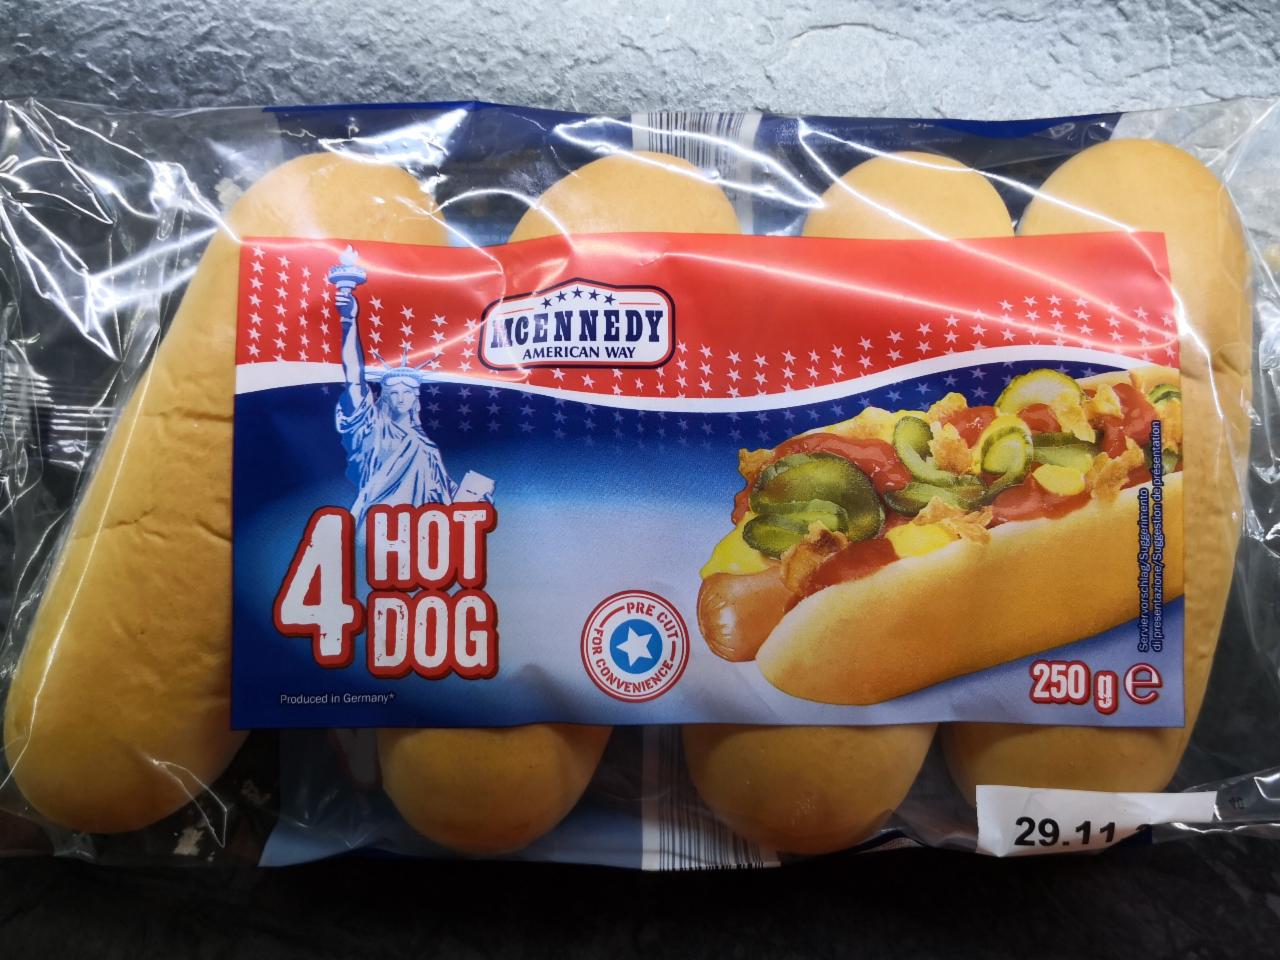 Zdjęcia - Hot dog rolls McEnnedy American Way